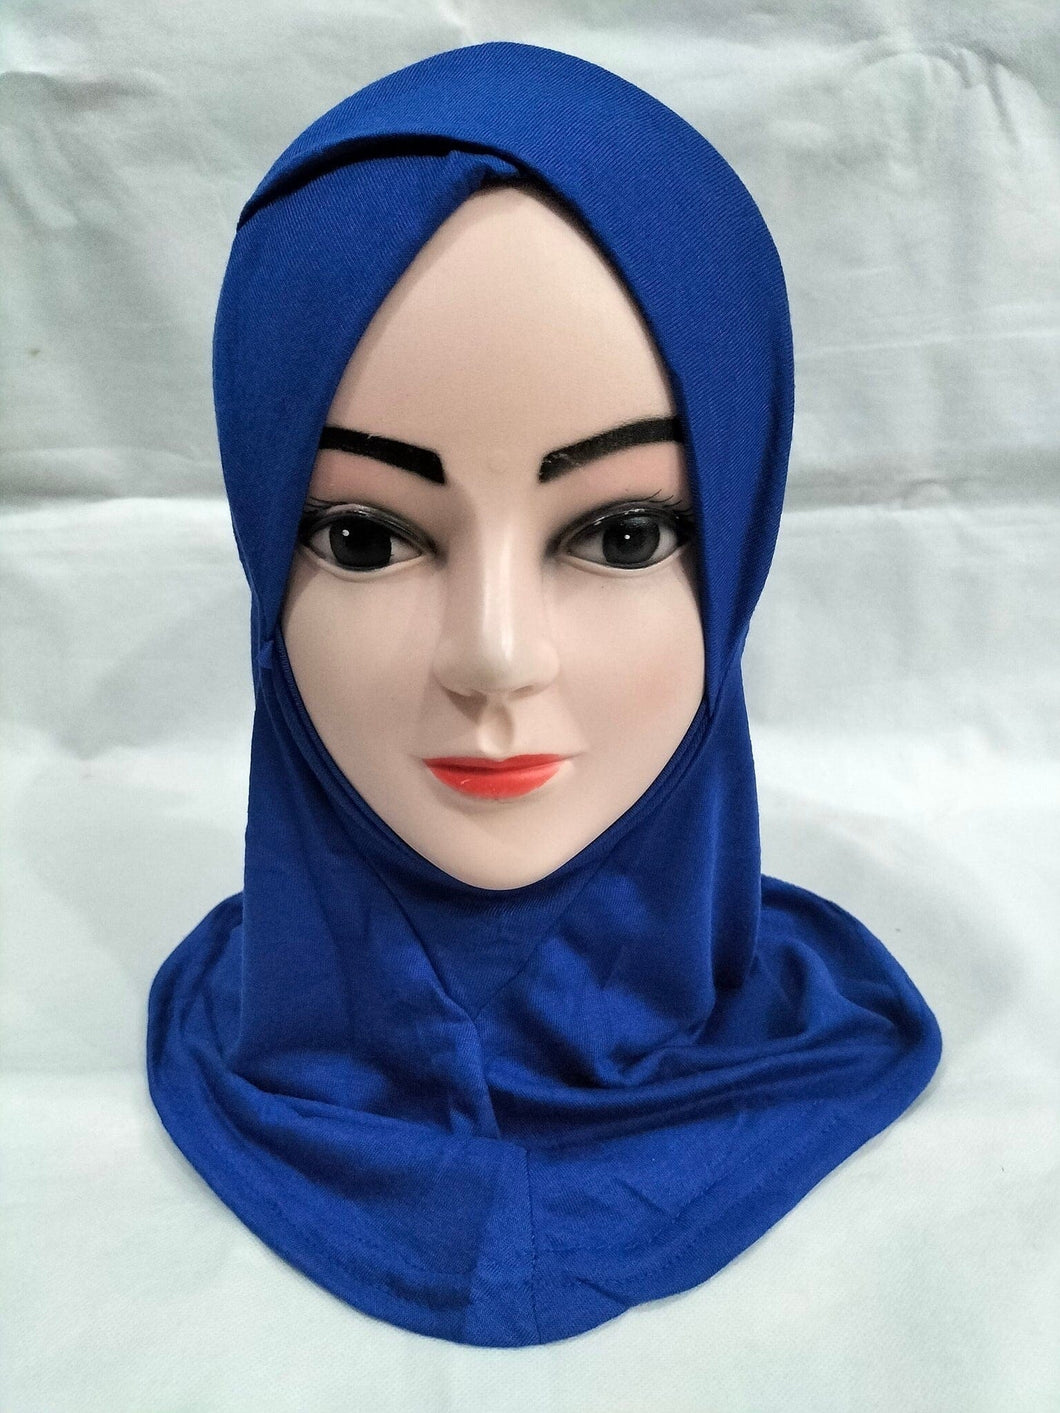 ninja hijab cap,net hijab caps,ninja cap hijab online,hijab cap with bun,fancy hijab caps,hijab bonne